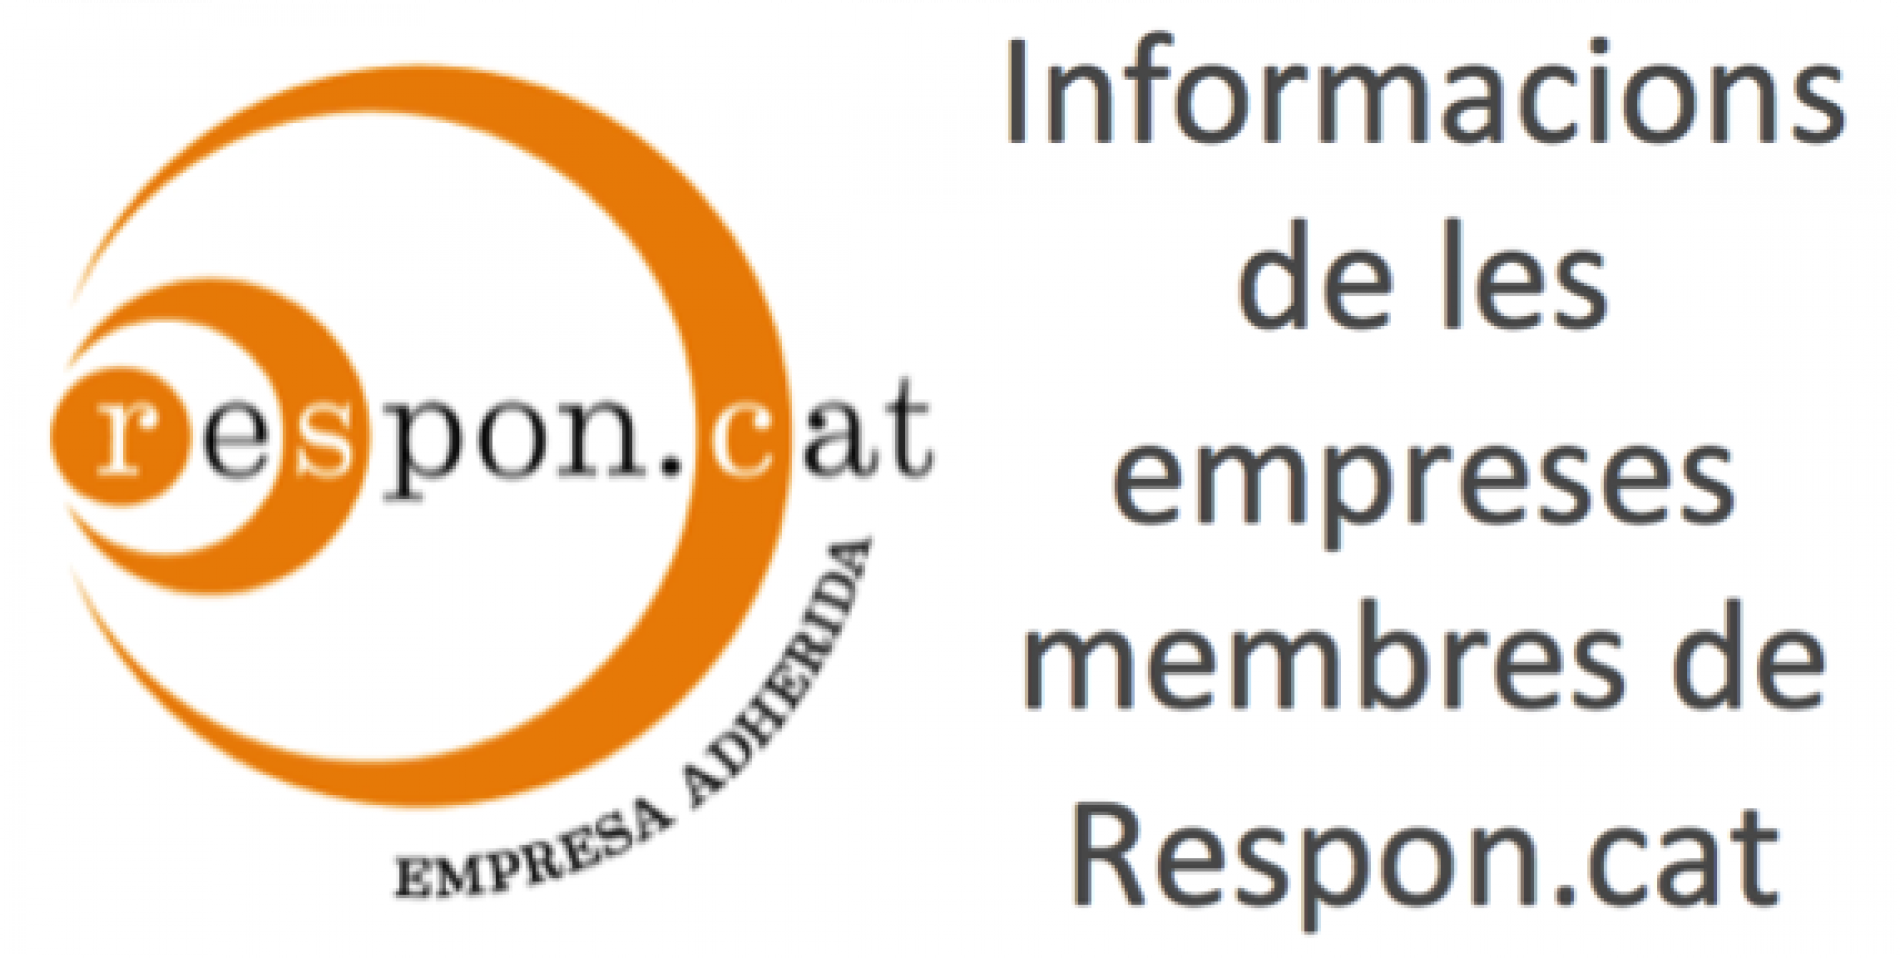 5 empreses membres de Respon.cat presents en la darrera edició del Butlletí Rscat